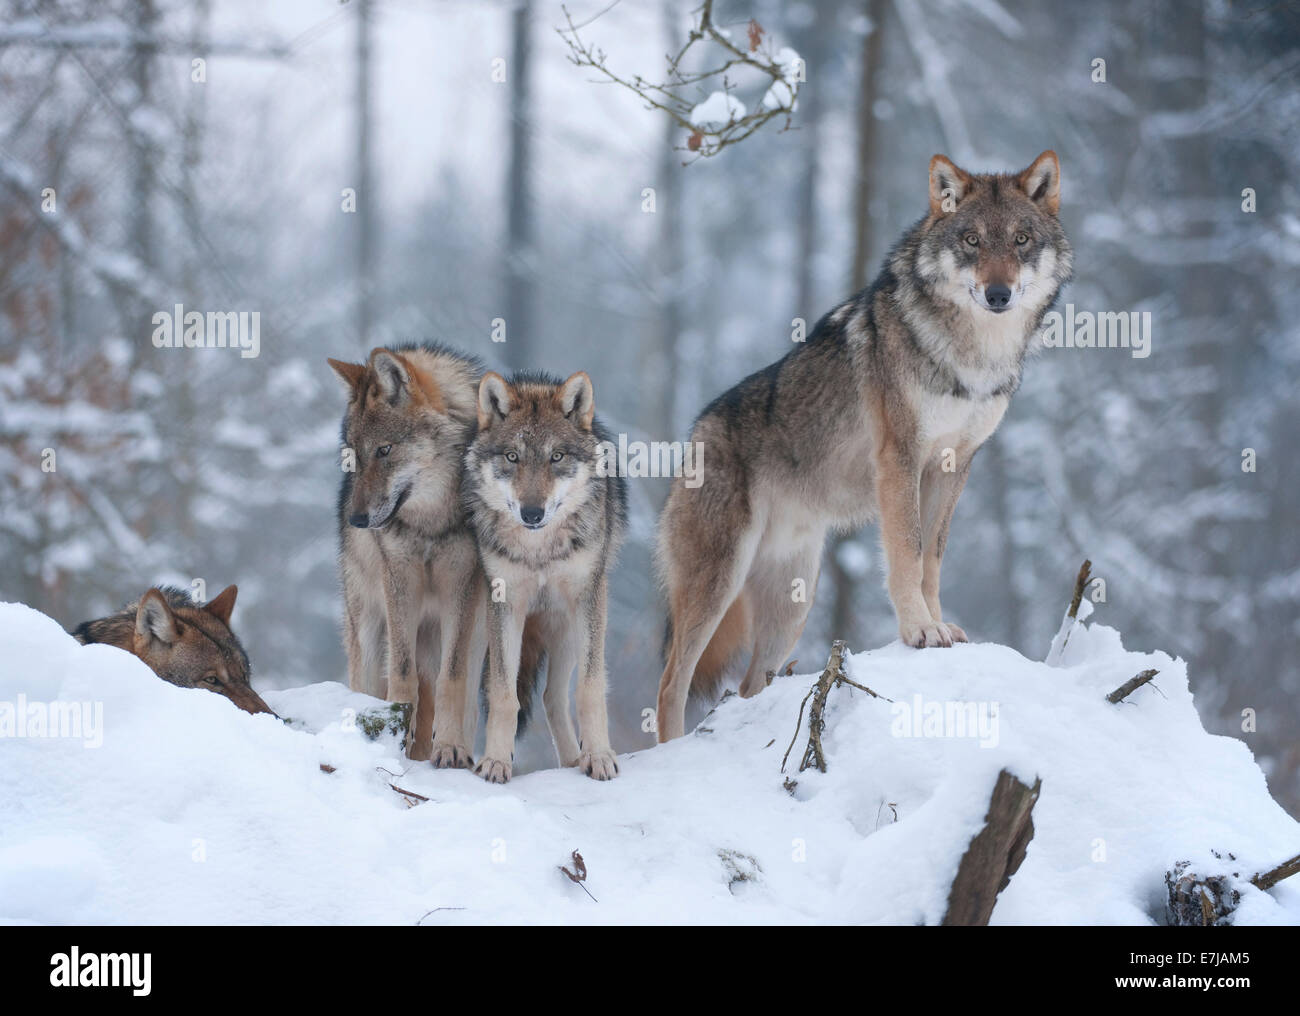 Graue Wölfe (Canis Lupus), zwei Jugendliche und ein erwachsenes Tier, stehend im Schnee, Gefangenschaft, Bayern, Deutschland Stockfoto